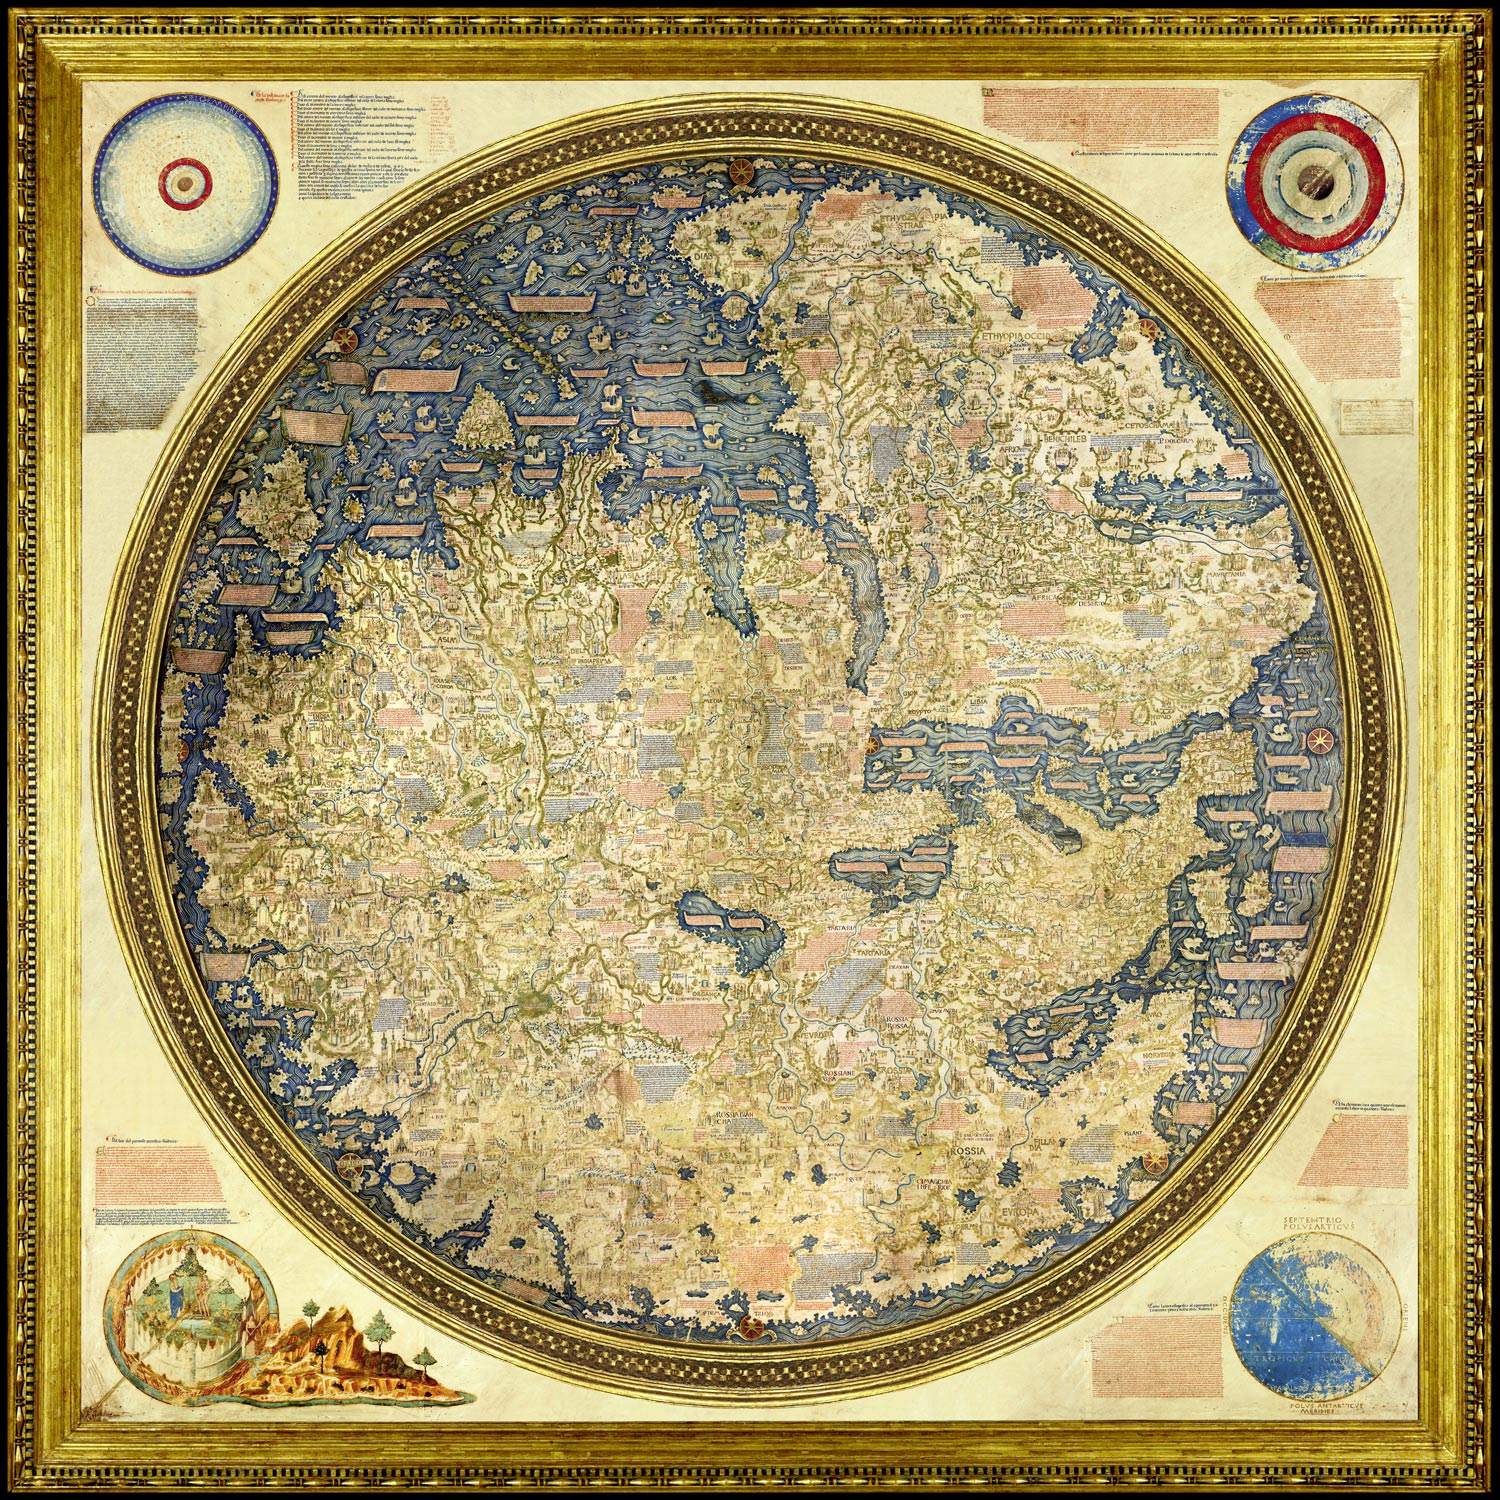 Fra Mauro, Mappamondo (1450-1460 circa; colori e oro su pergamena incollata su legno, 230 x 230 cm; Venezia, Biblioteca Nazionale Marciana)